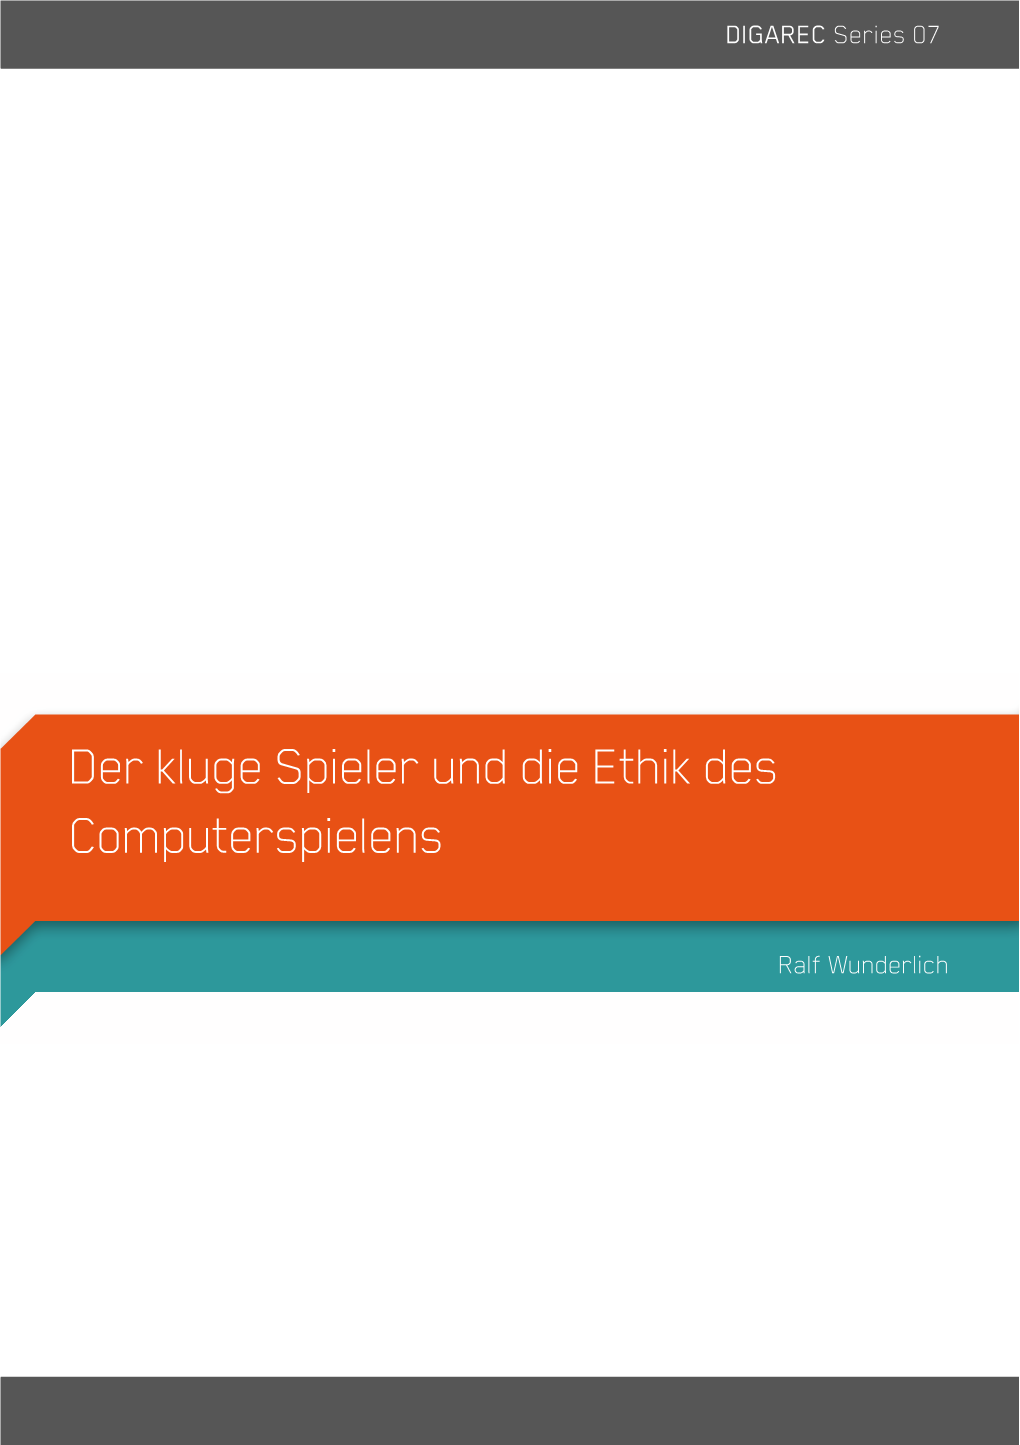 Der Kluge Spieler Und Die Ethik Des Computerspielens (DIGAREC